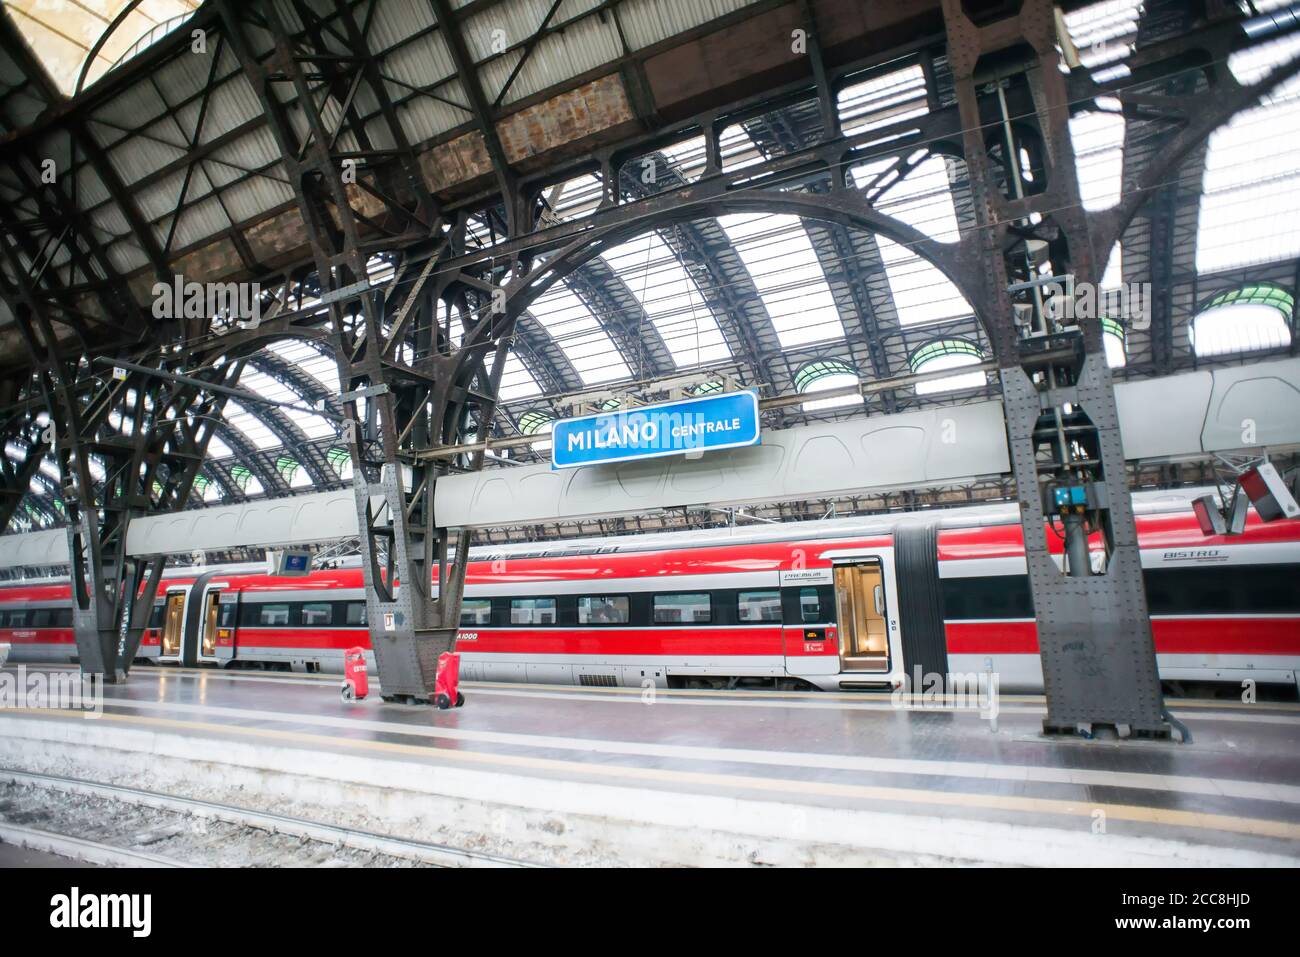 Milan. Italie - 18 juillet 2019 : vue intérieure de la gare centrale de Milan. Signe bleu avec le nom de la station. Banque D'Images